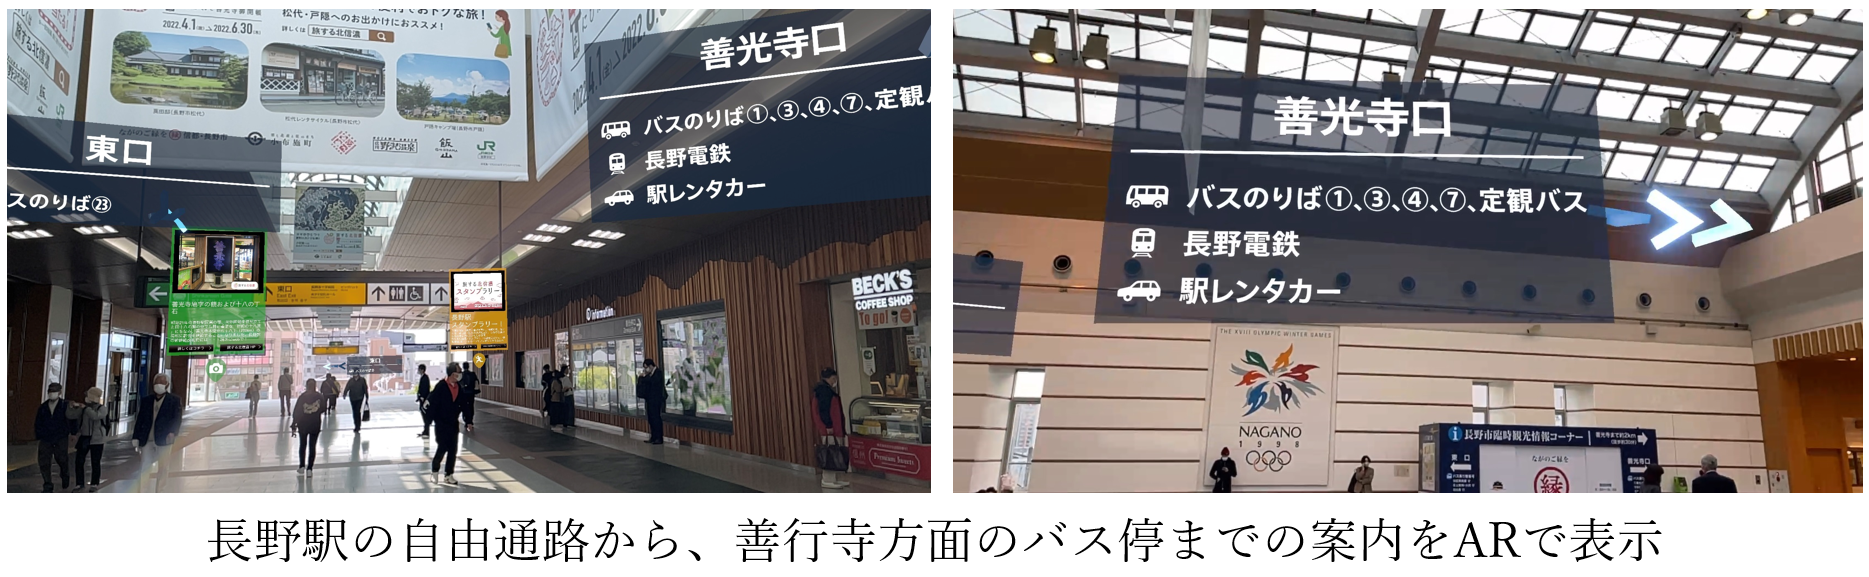 長野駅AR画像